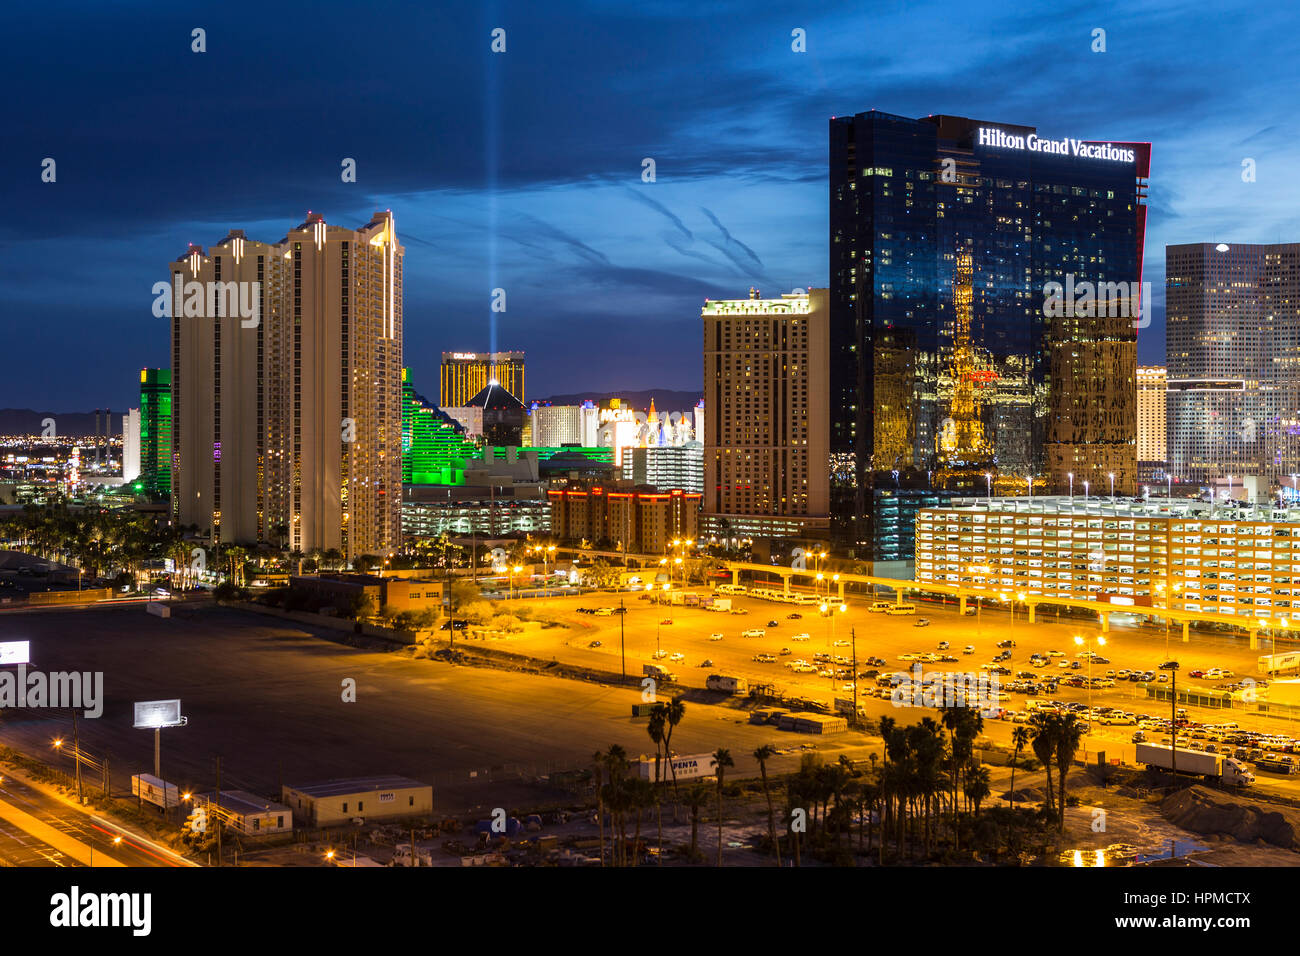 Las Vegas, Nevada, USA - March 22, 2015:  Las Vegas strip casino resort towers at night. Stock Photo